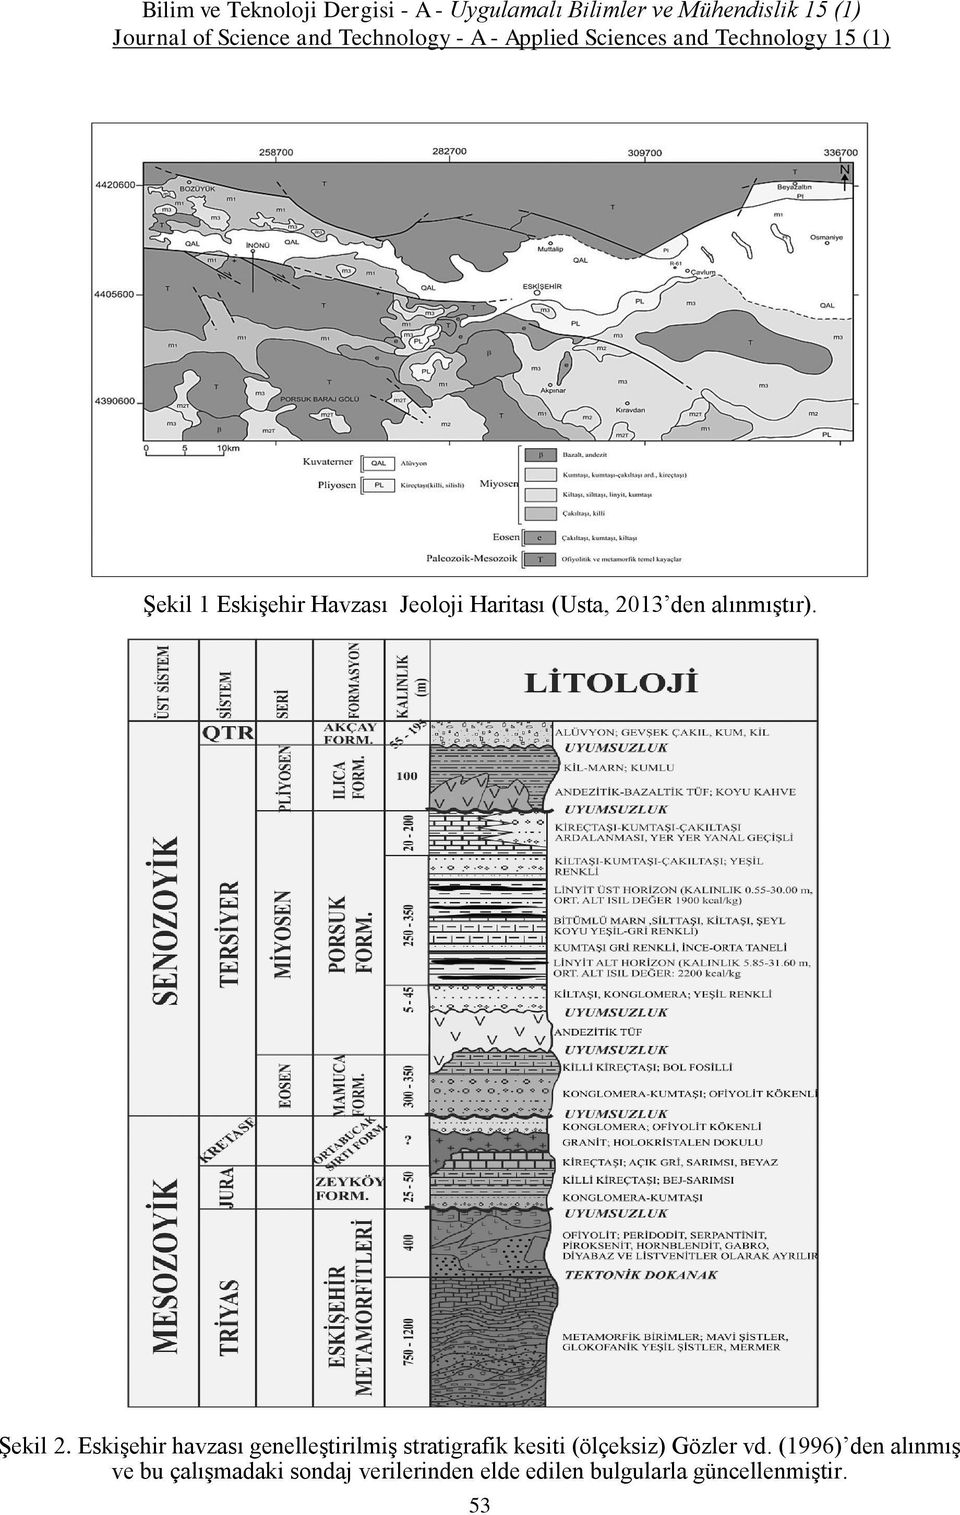 Eskişehir havzası genelleştirilmiş stratigrafik kesiti